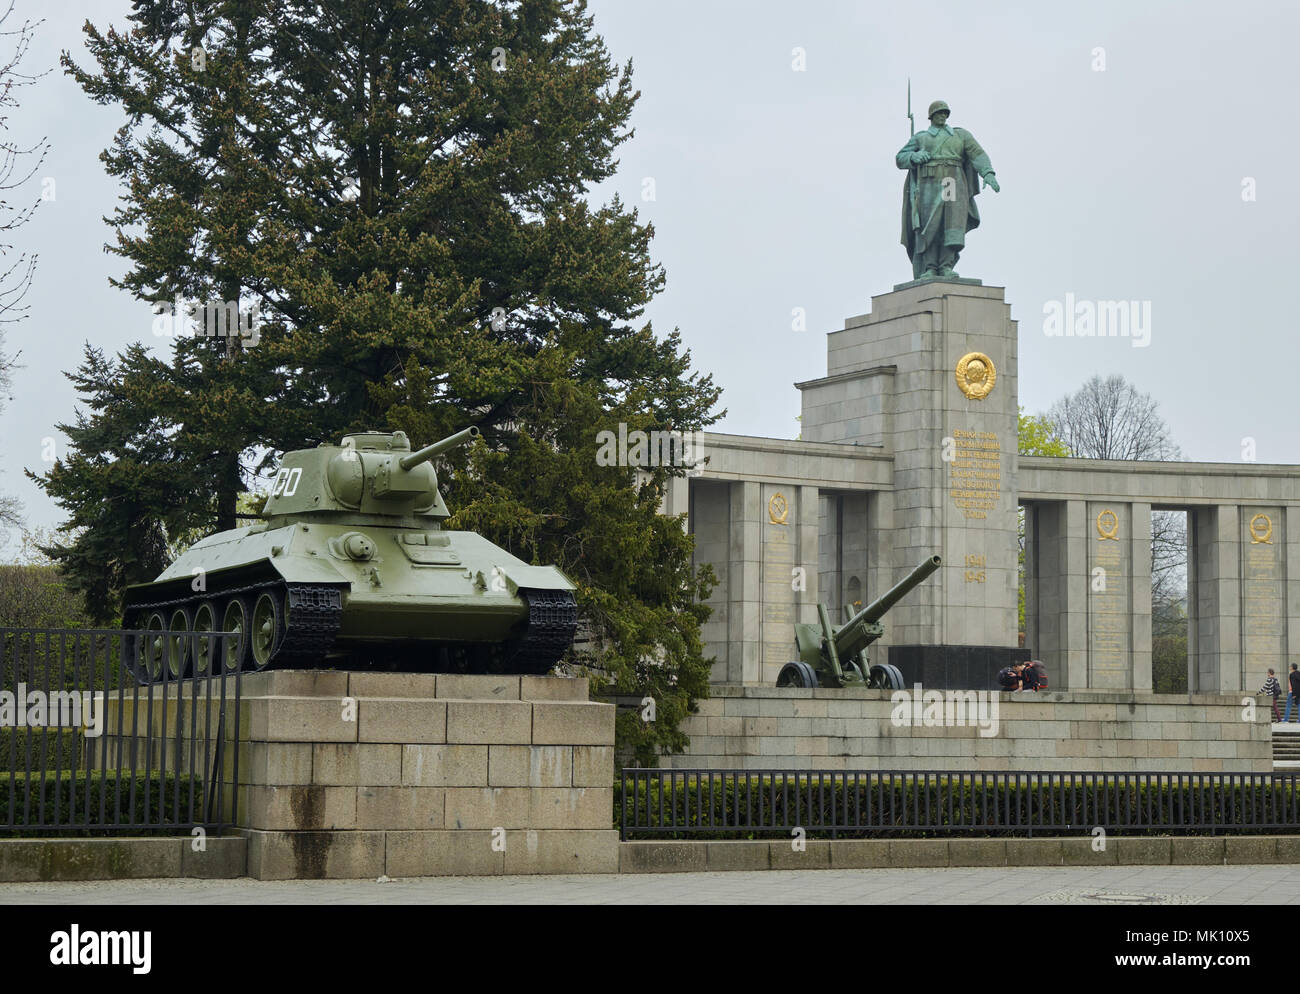 Berlino, Germania - 14 Aprile 2018: carro armato sovietico T-34 e cannone di artiglieria con statua del soldato sovietico e pino sullo sfondo a guerra sovietica Memori Foto Stock